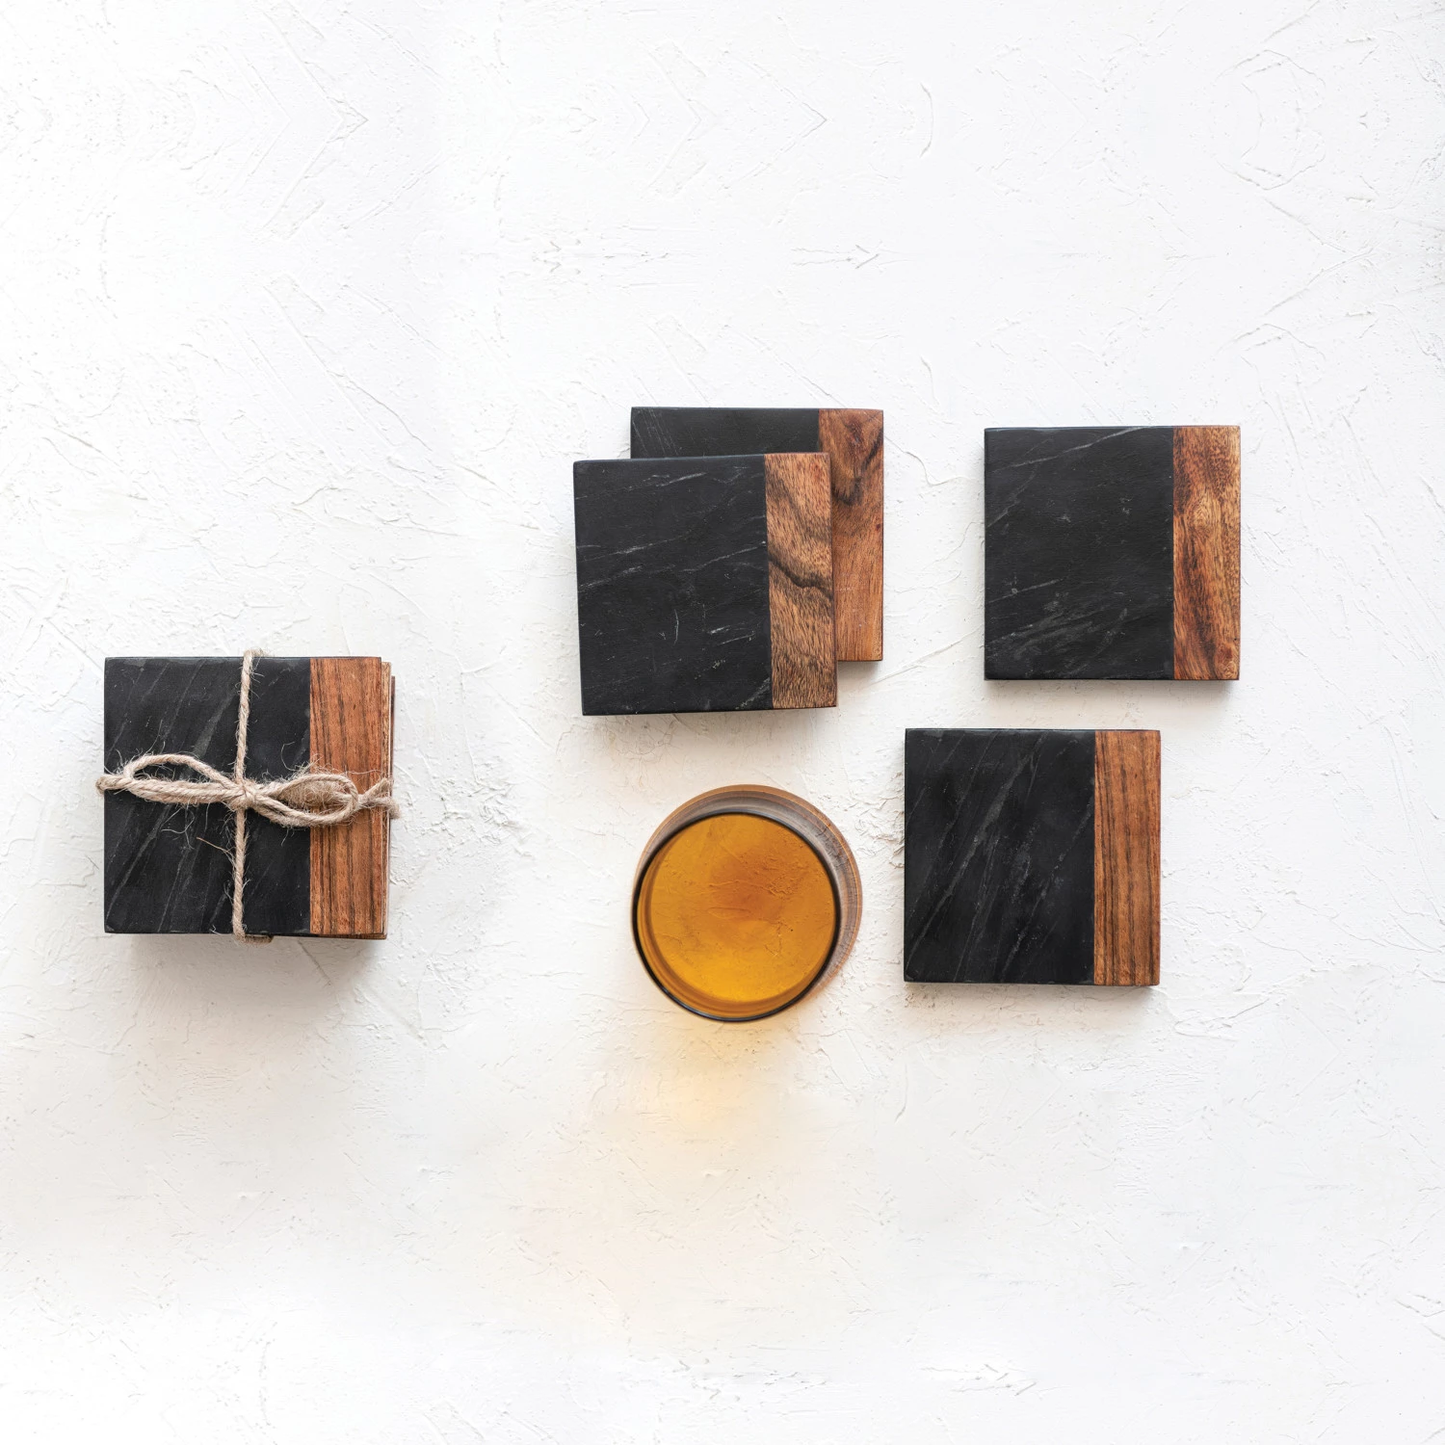 Marble & Acacia Wood Coasters, Black & Natural, Set of 4